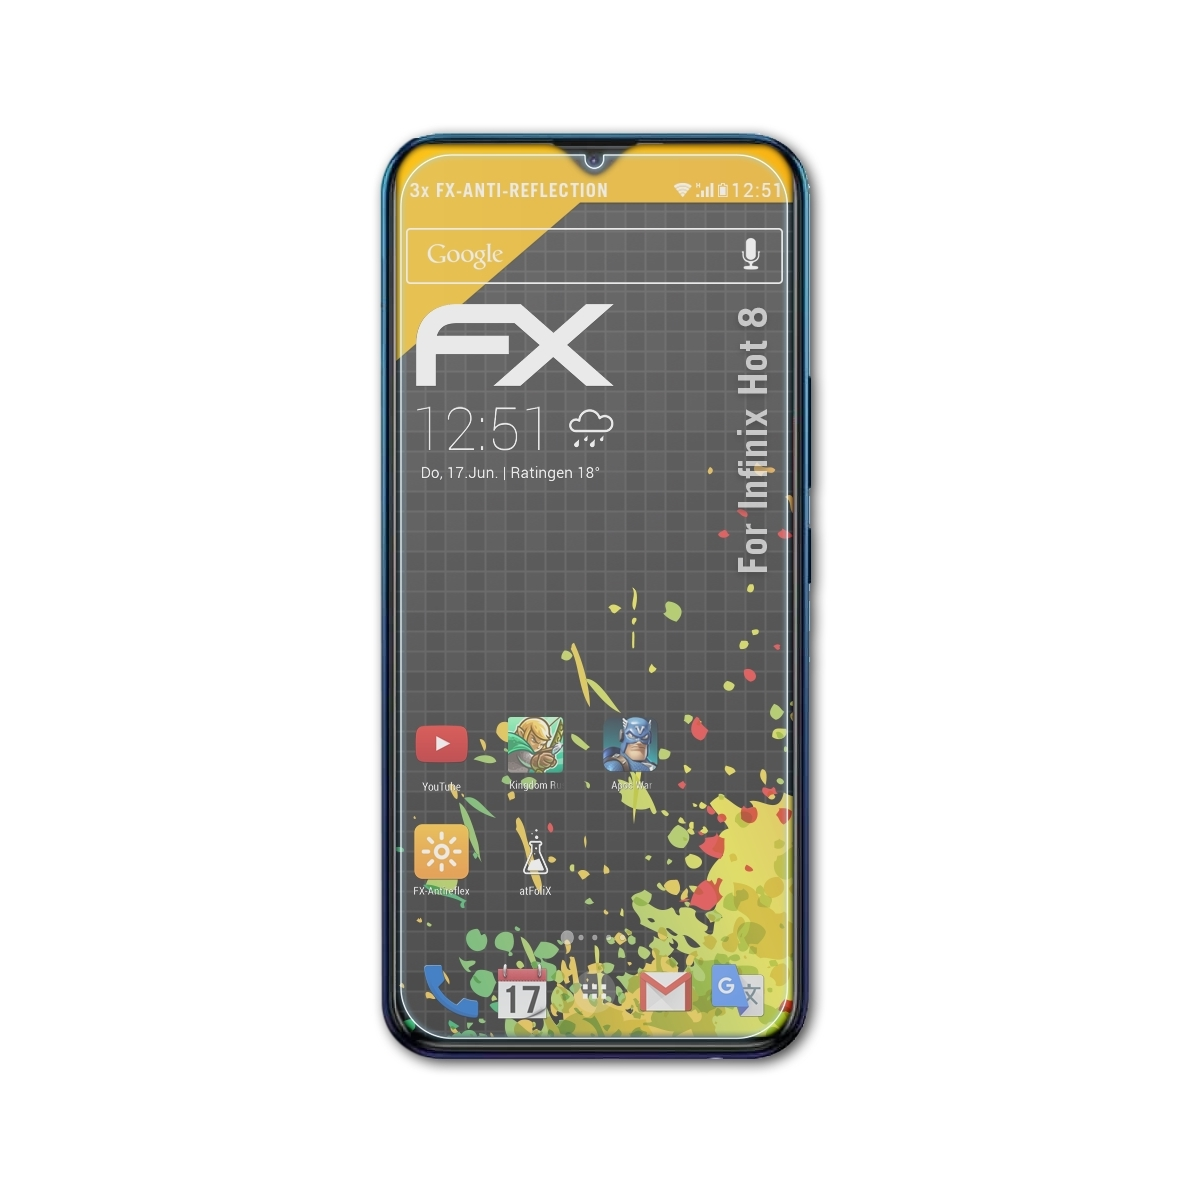 ATFOLIX 3x FX-Antireflex 8) Infinix Displayschutz(für Hot